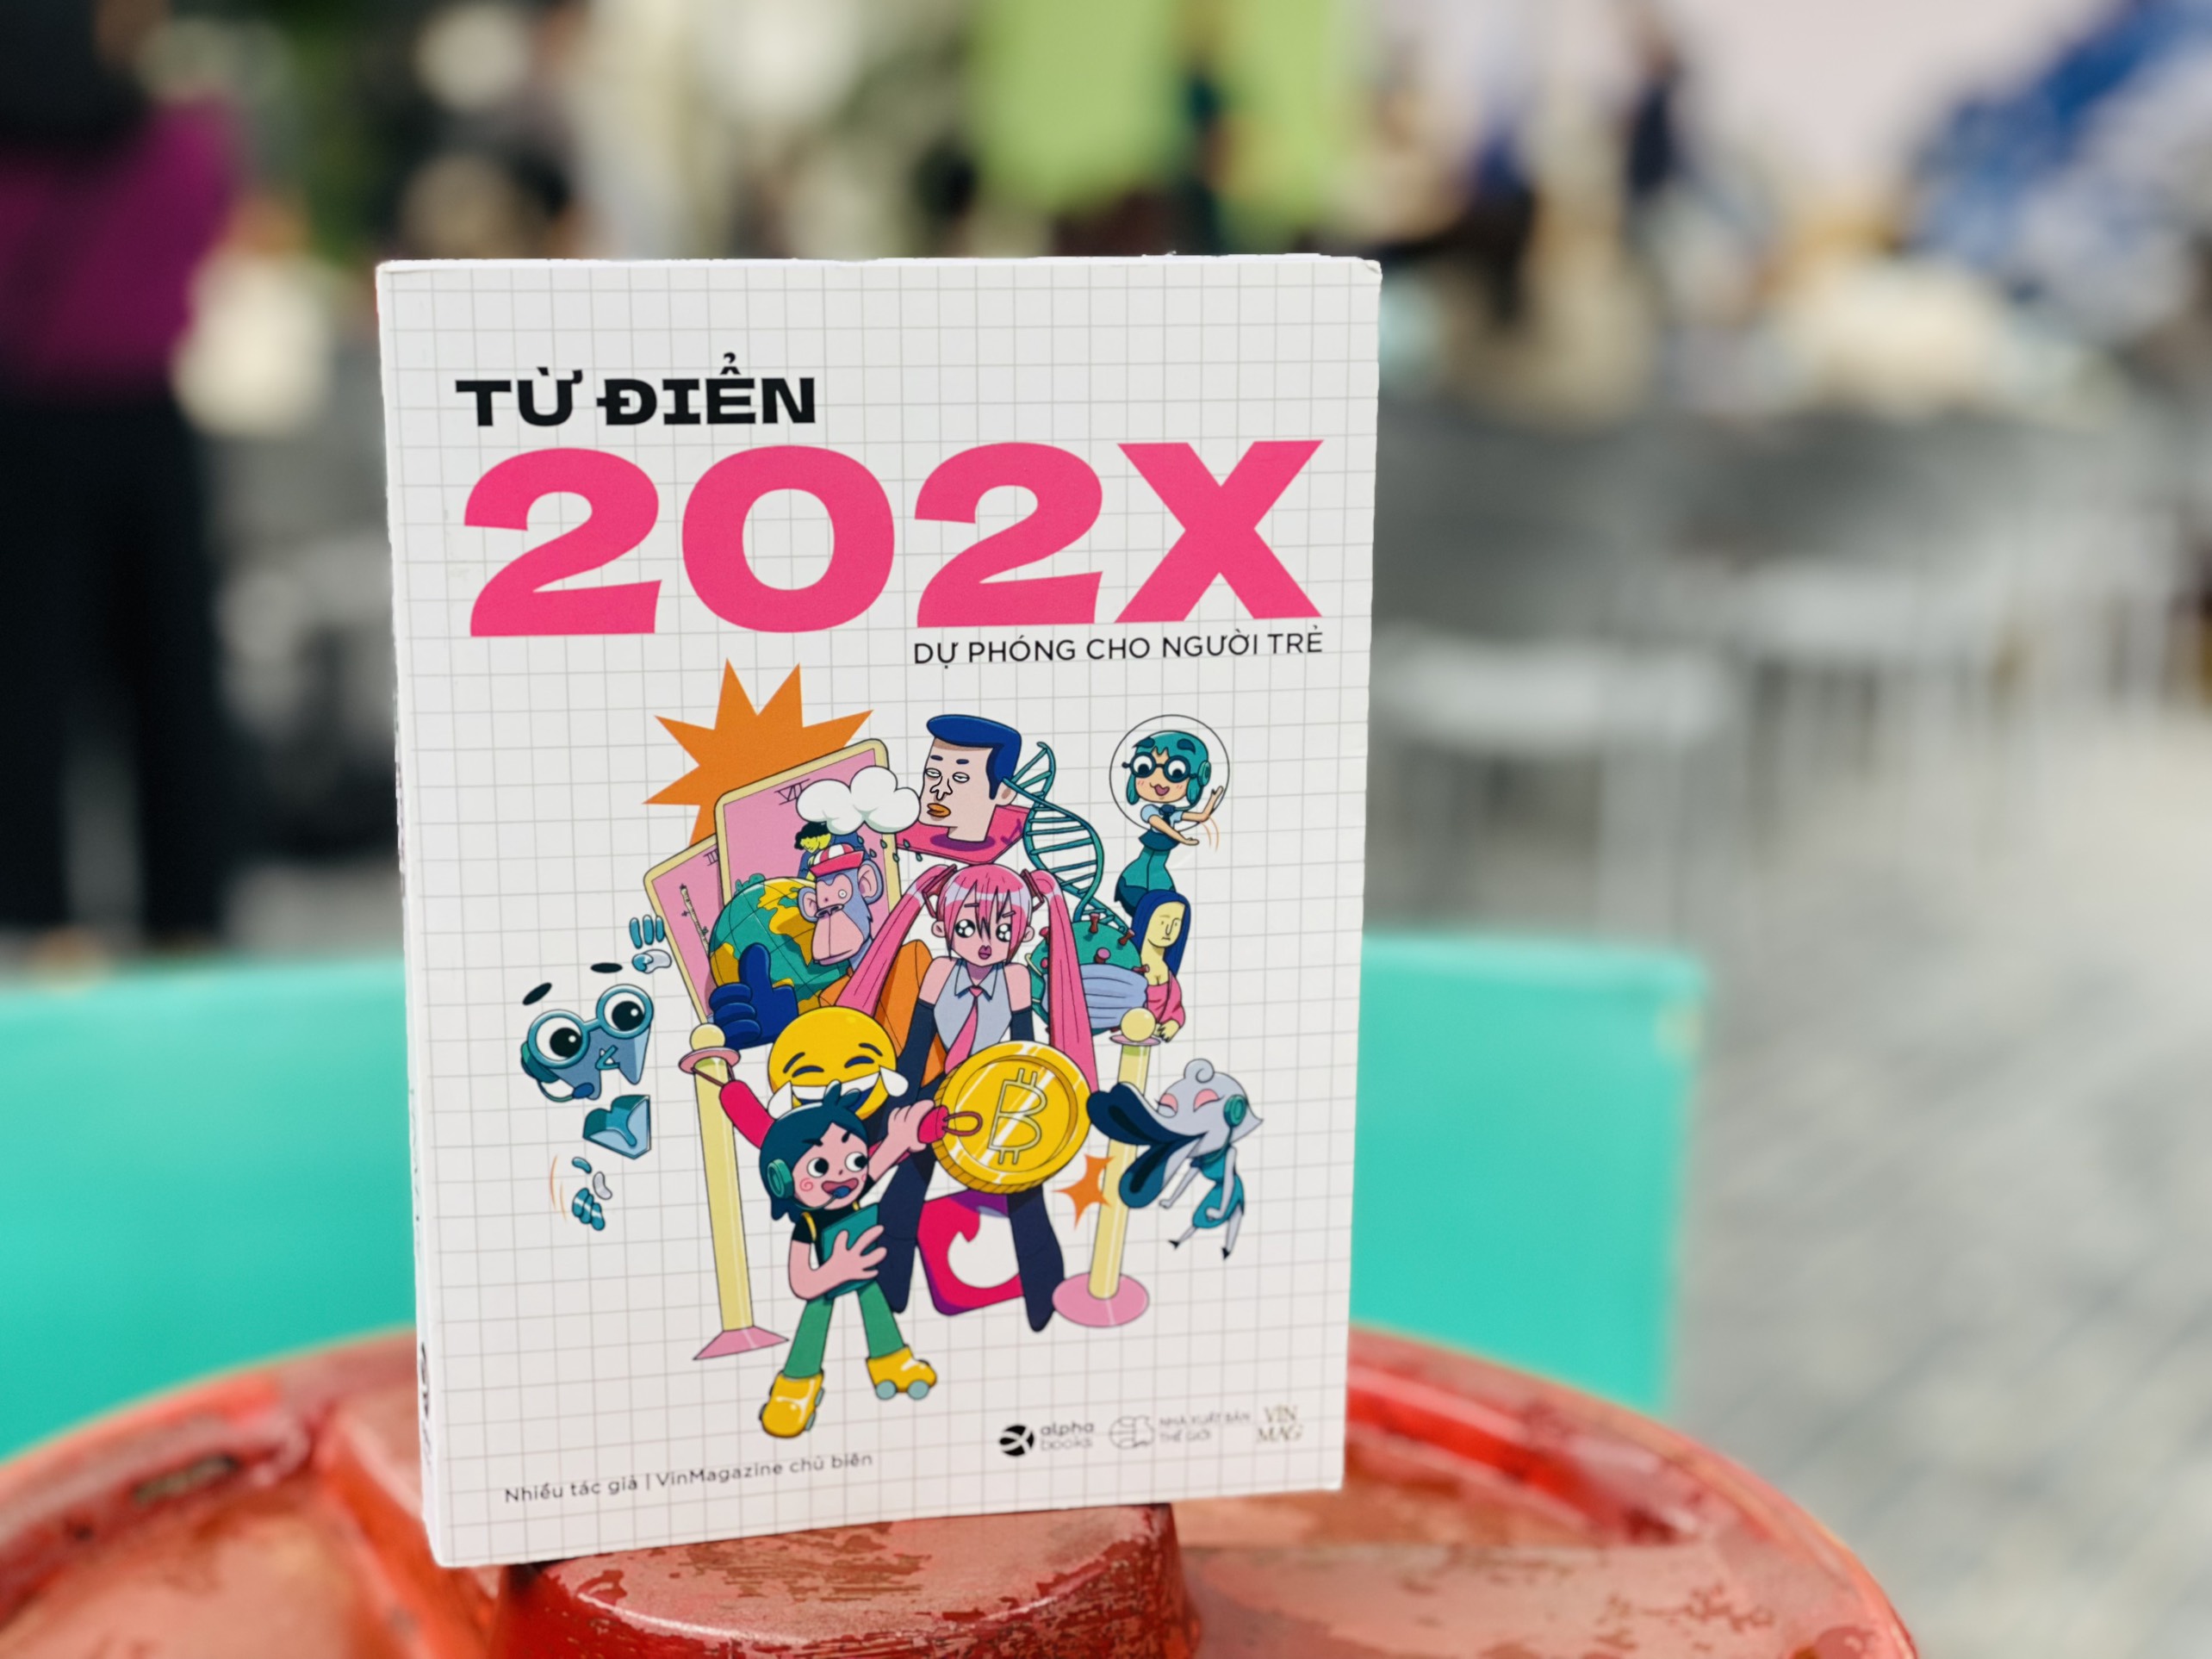 ‘Từ điển 202X’ - Cái nhìn tổng thể về tương lai của Gen Z - 2